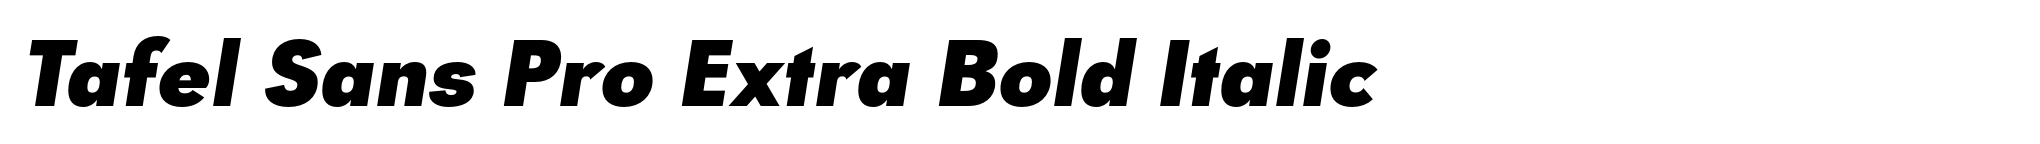 Tafel Sans Pro Extra Bold Italic image